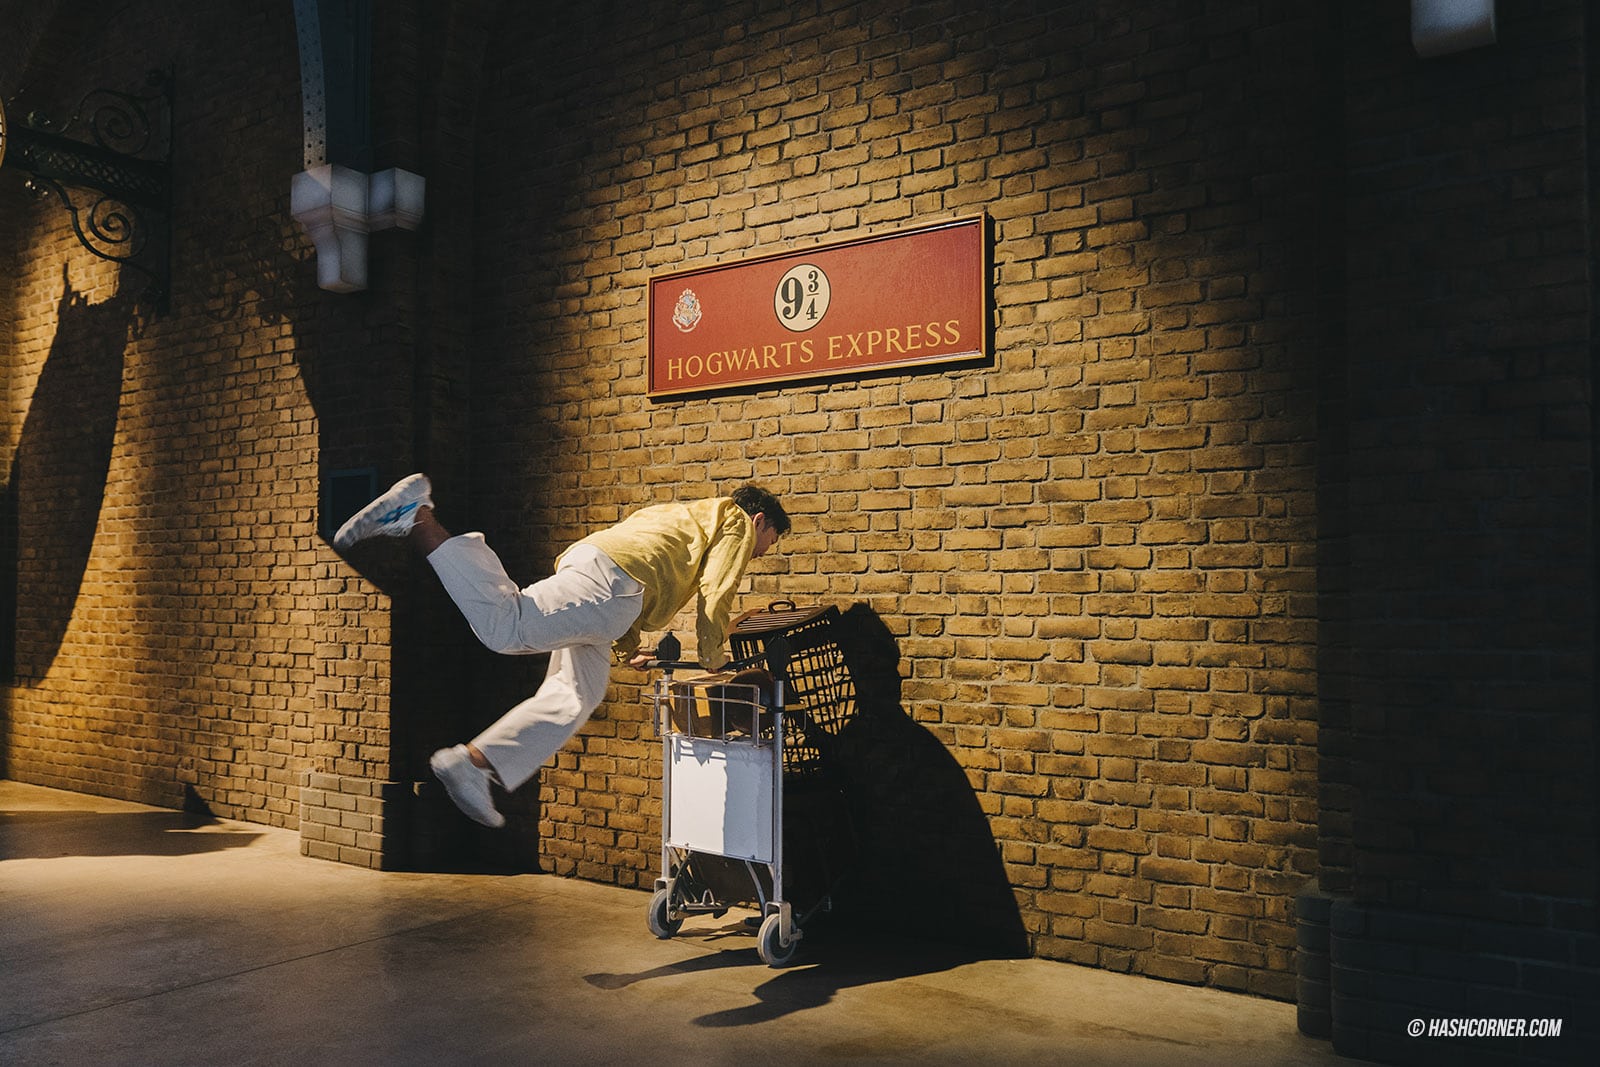 รีวิว Harry Potter &#8211; Warner Bros. Studio Tour Tokyo โตเกียว